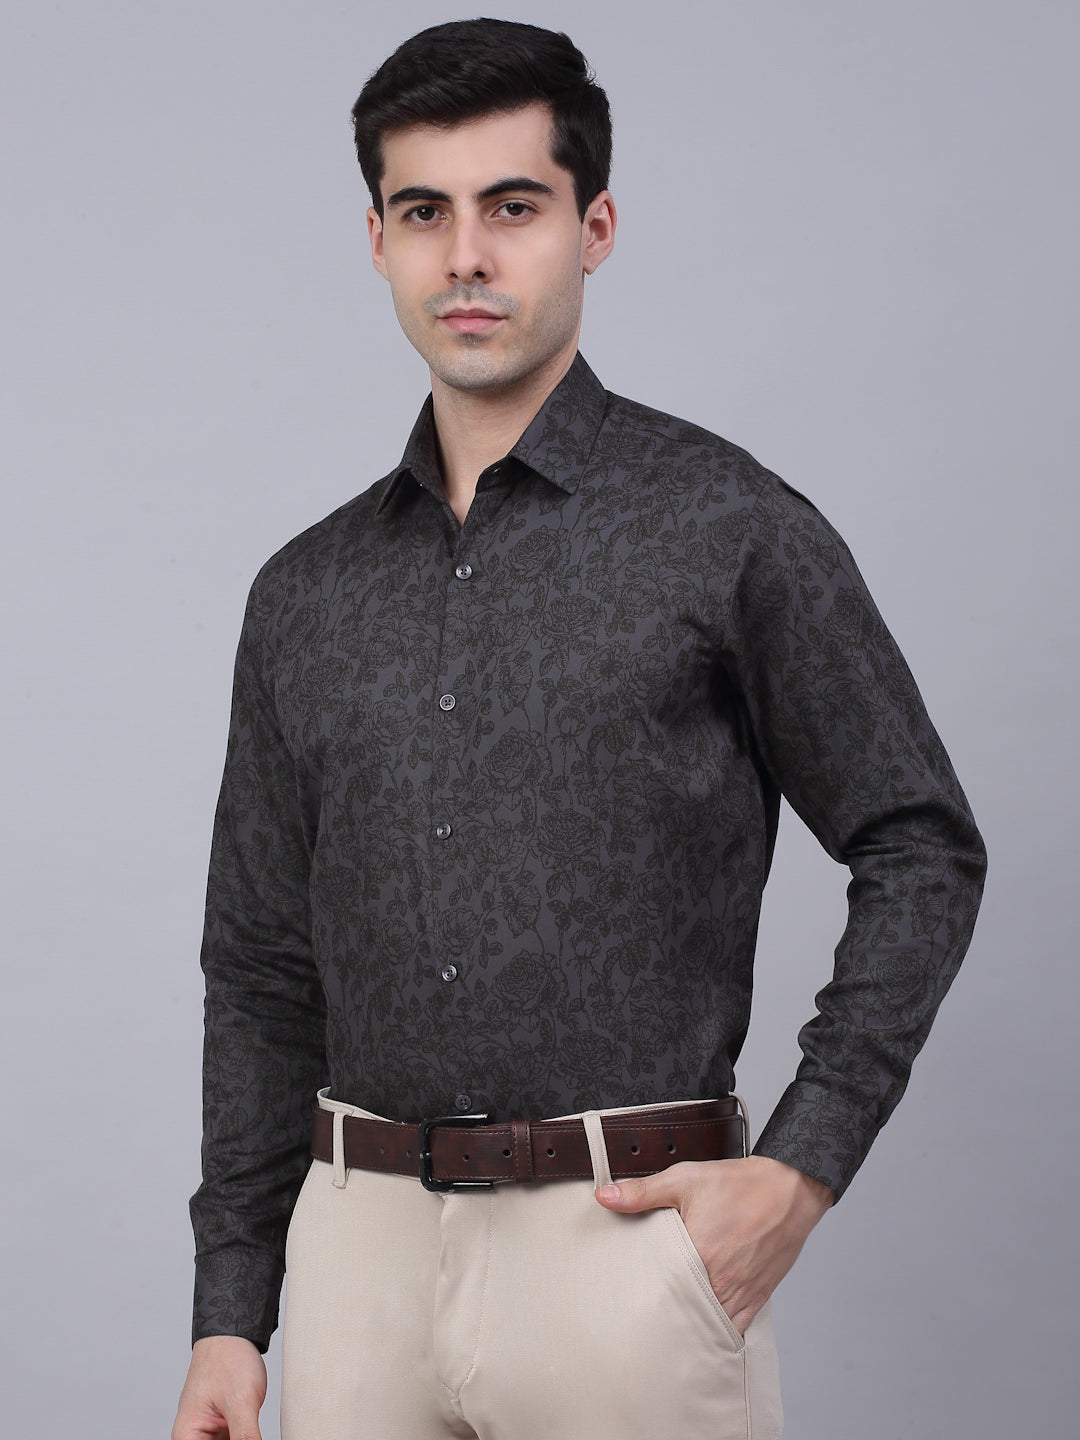 Jainish Men's Cotton Lycra Printed Formal Shirts